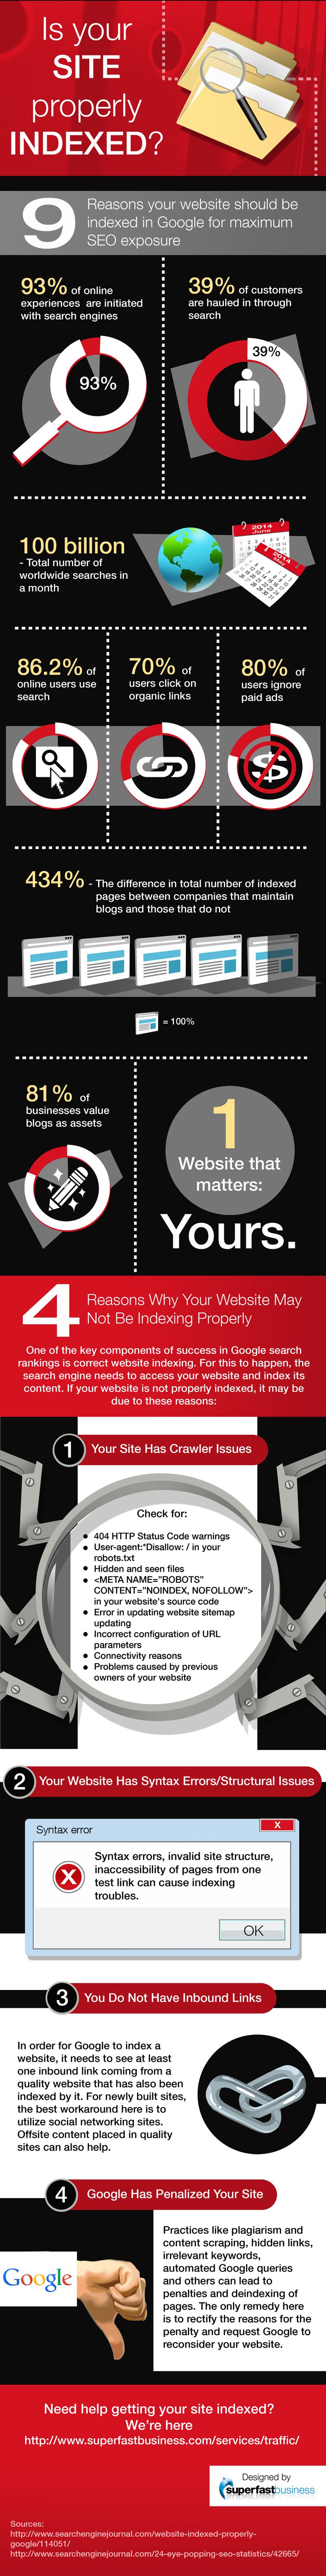 ¿Está tu sitio correctamente indexado en Google? (infografía)